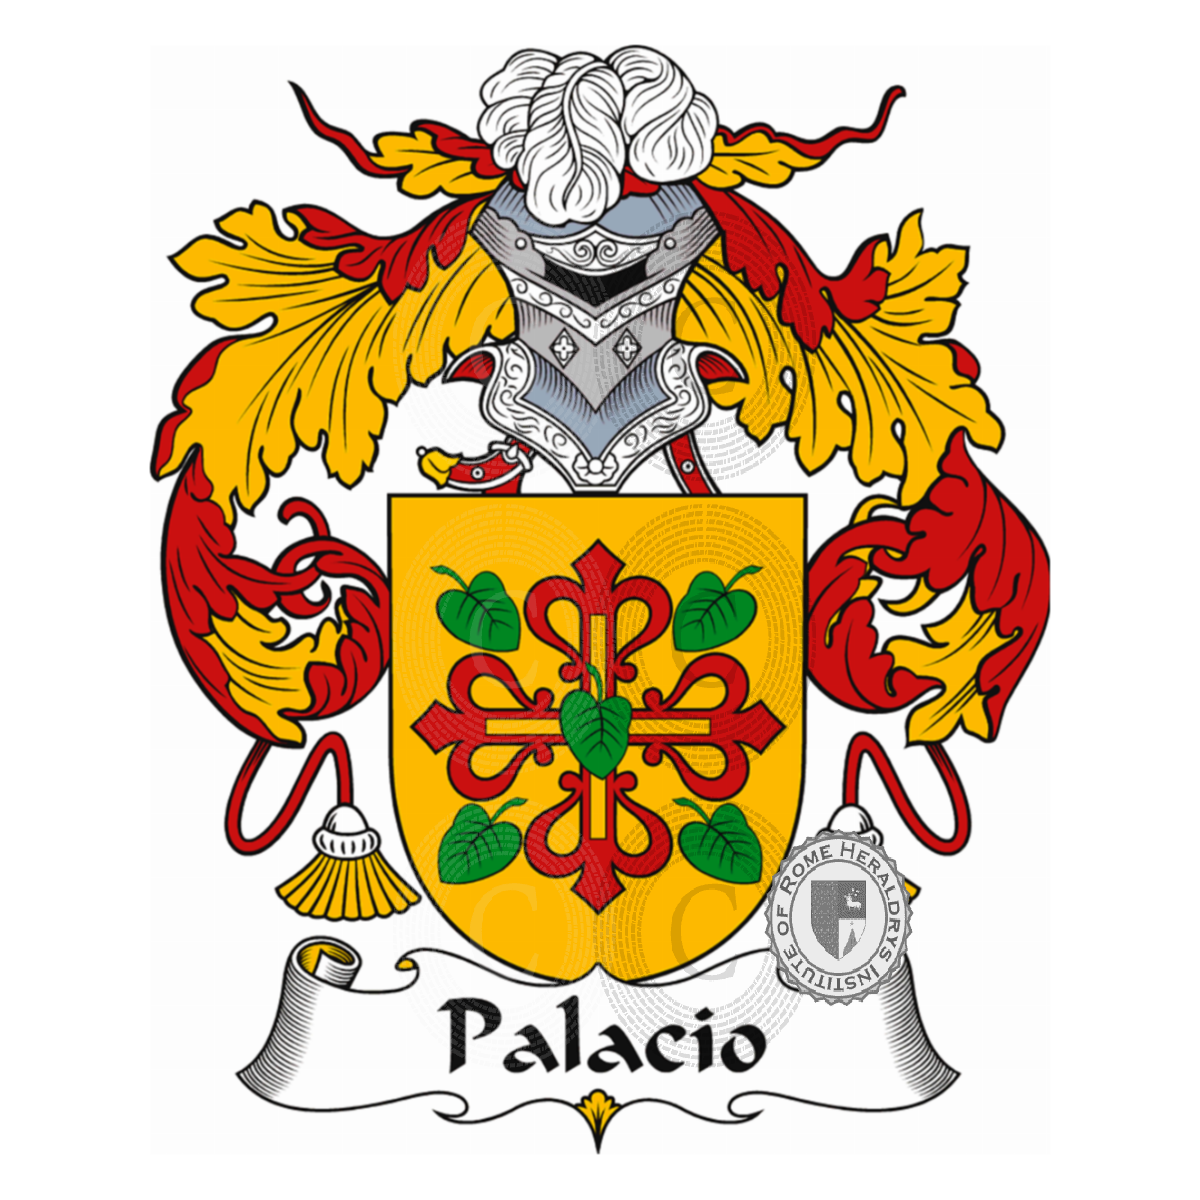 Stemma della famigliaPalacio, de Palacio,del Palacio